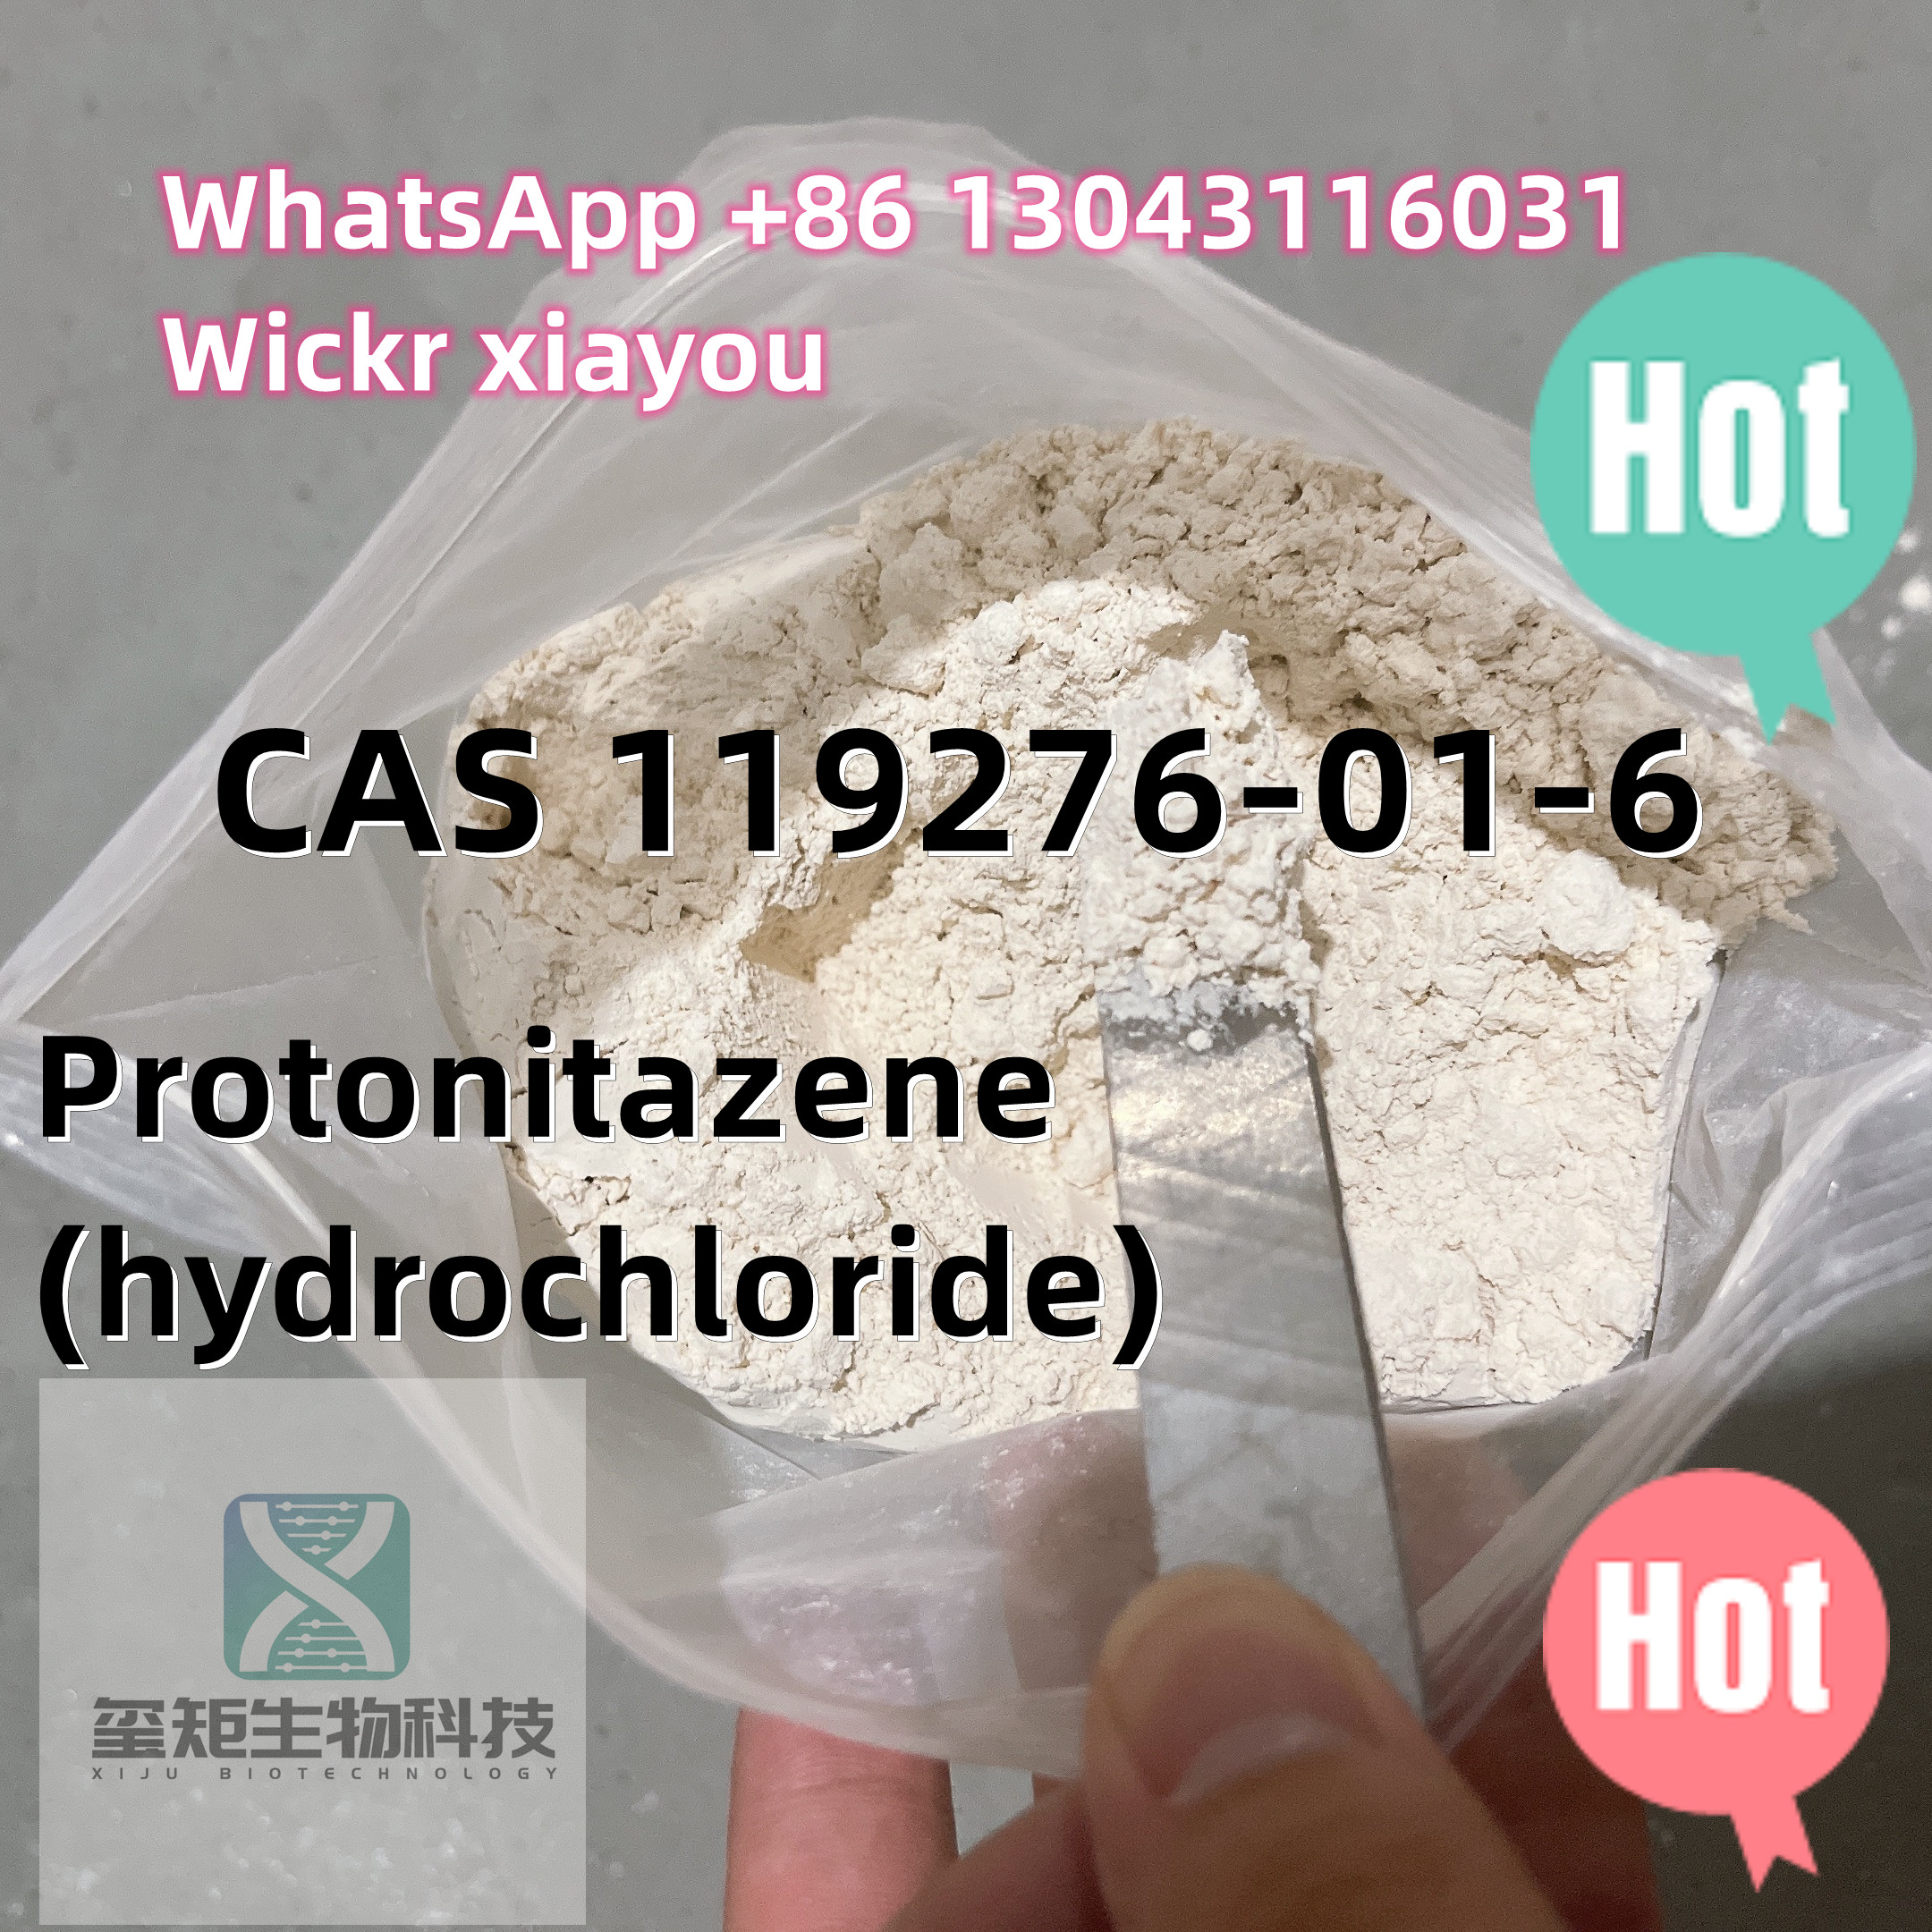 ඉහළම තත්ත්වයේ 99% පිරිසිදු කුඩු Protonitazene-hydrochloride CAS 119276-01-6 ,Threema: 9JPV7VEE, Wickr ME:xiayou